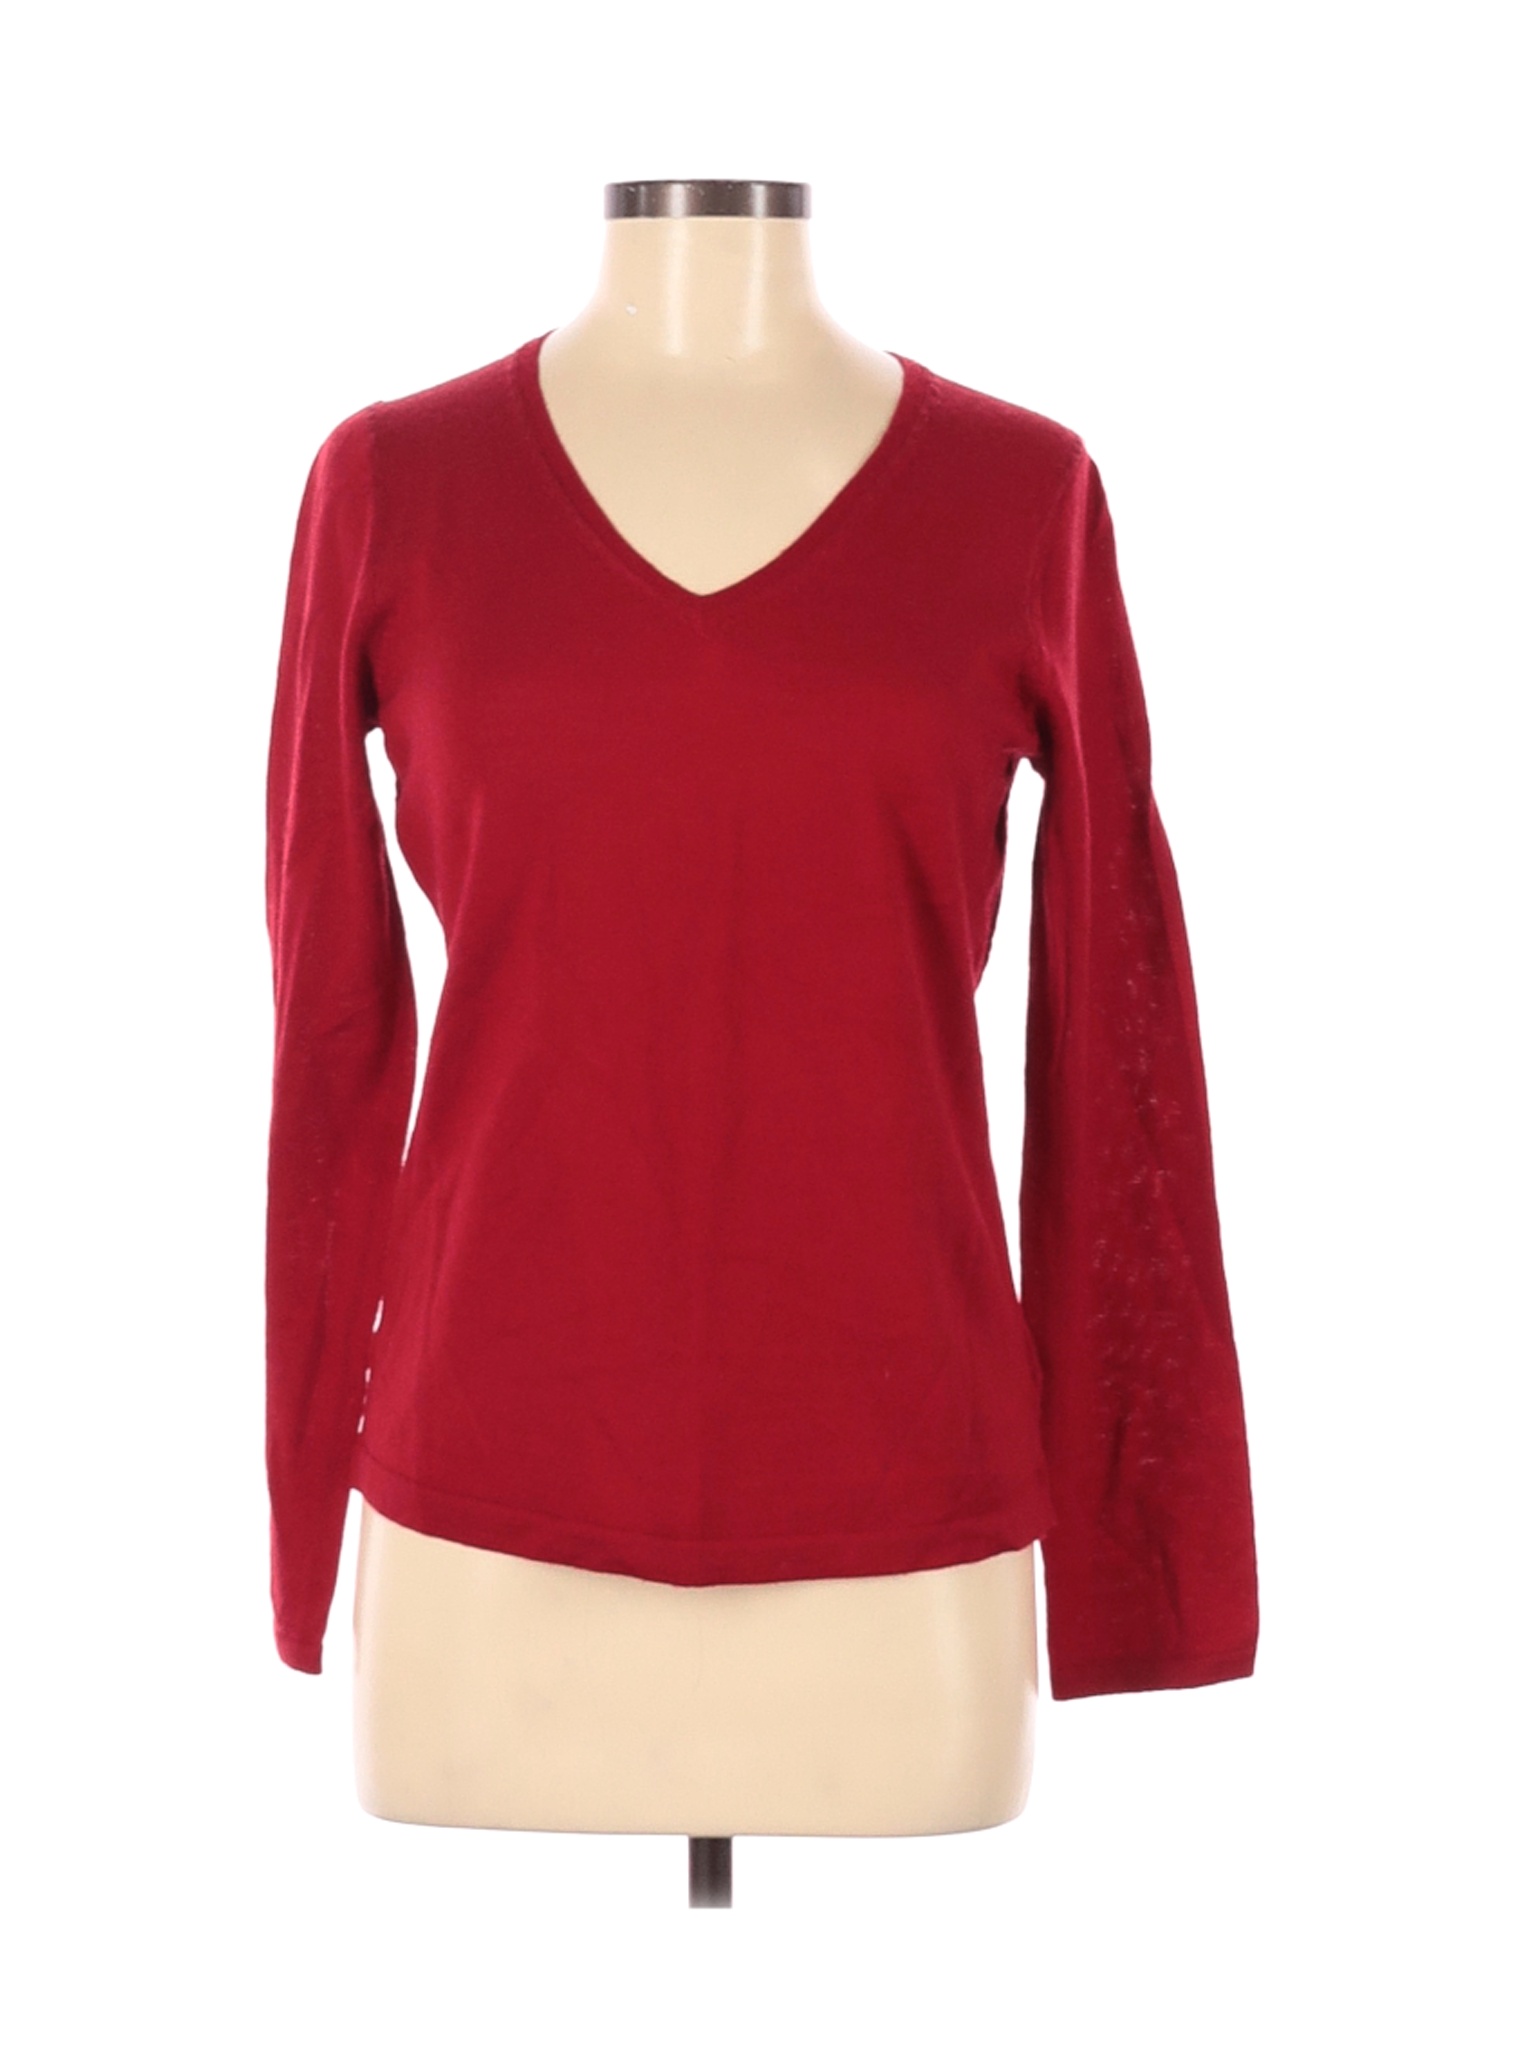 Liz Claiborne Women Red Wool Pullover Sweater M | eBay